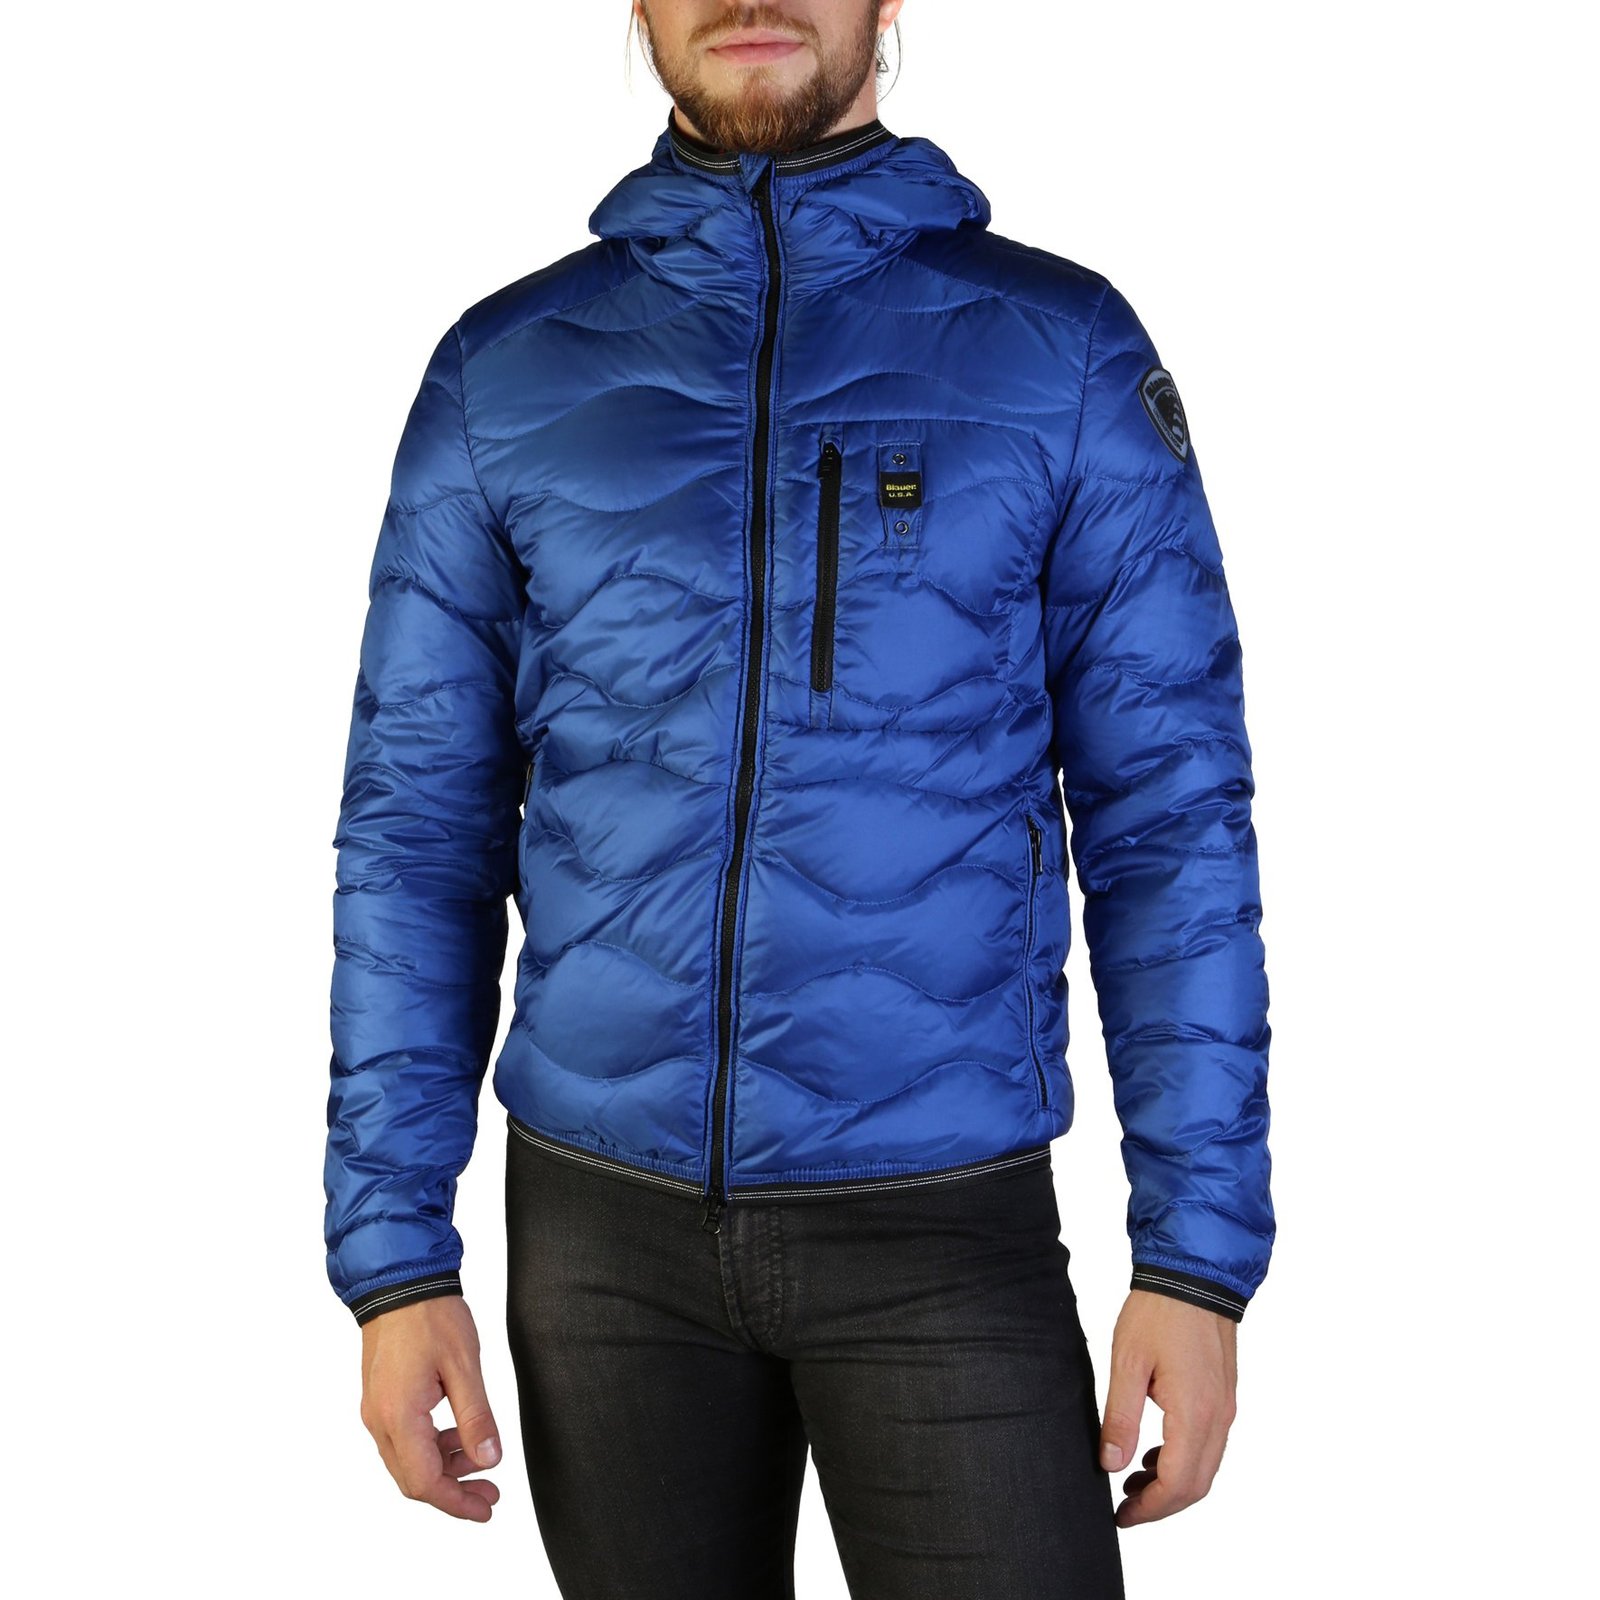 Blauer - MEN'S BOMBER ZIP UP - Coats, Jackets & Vests